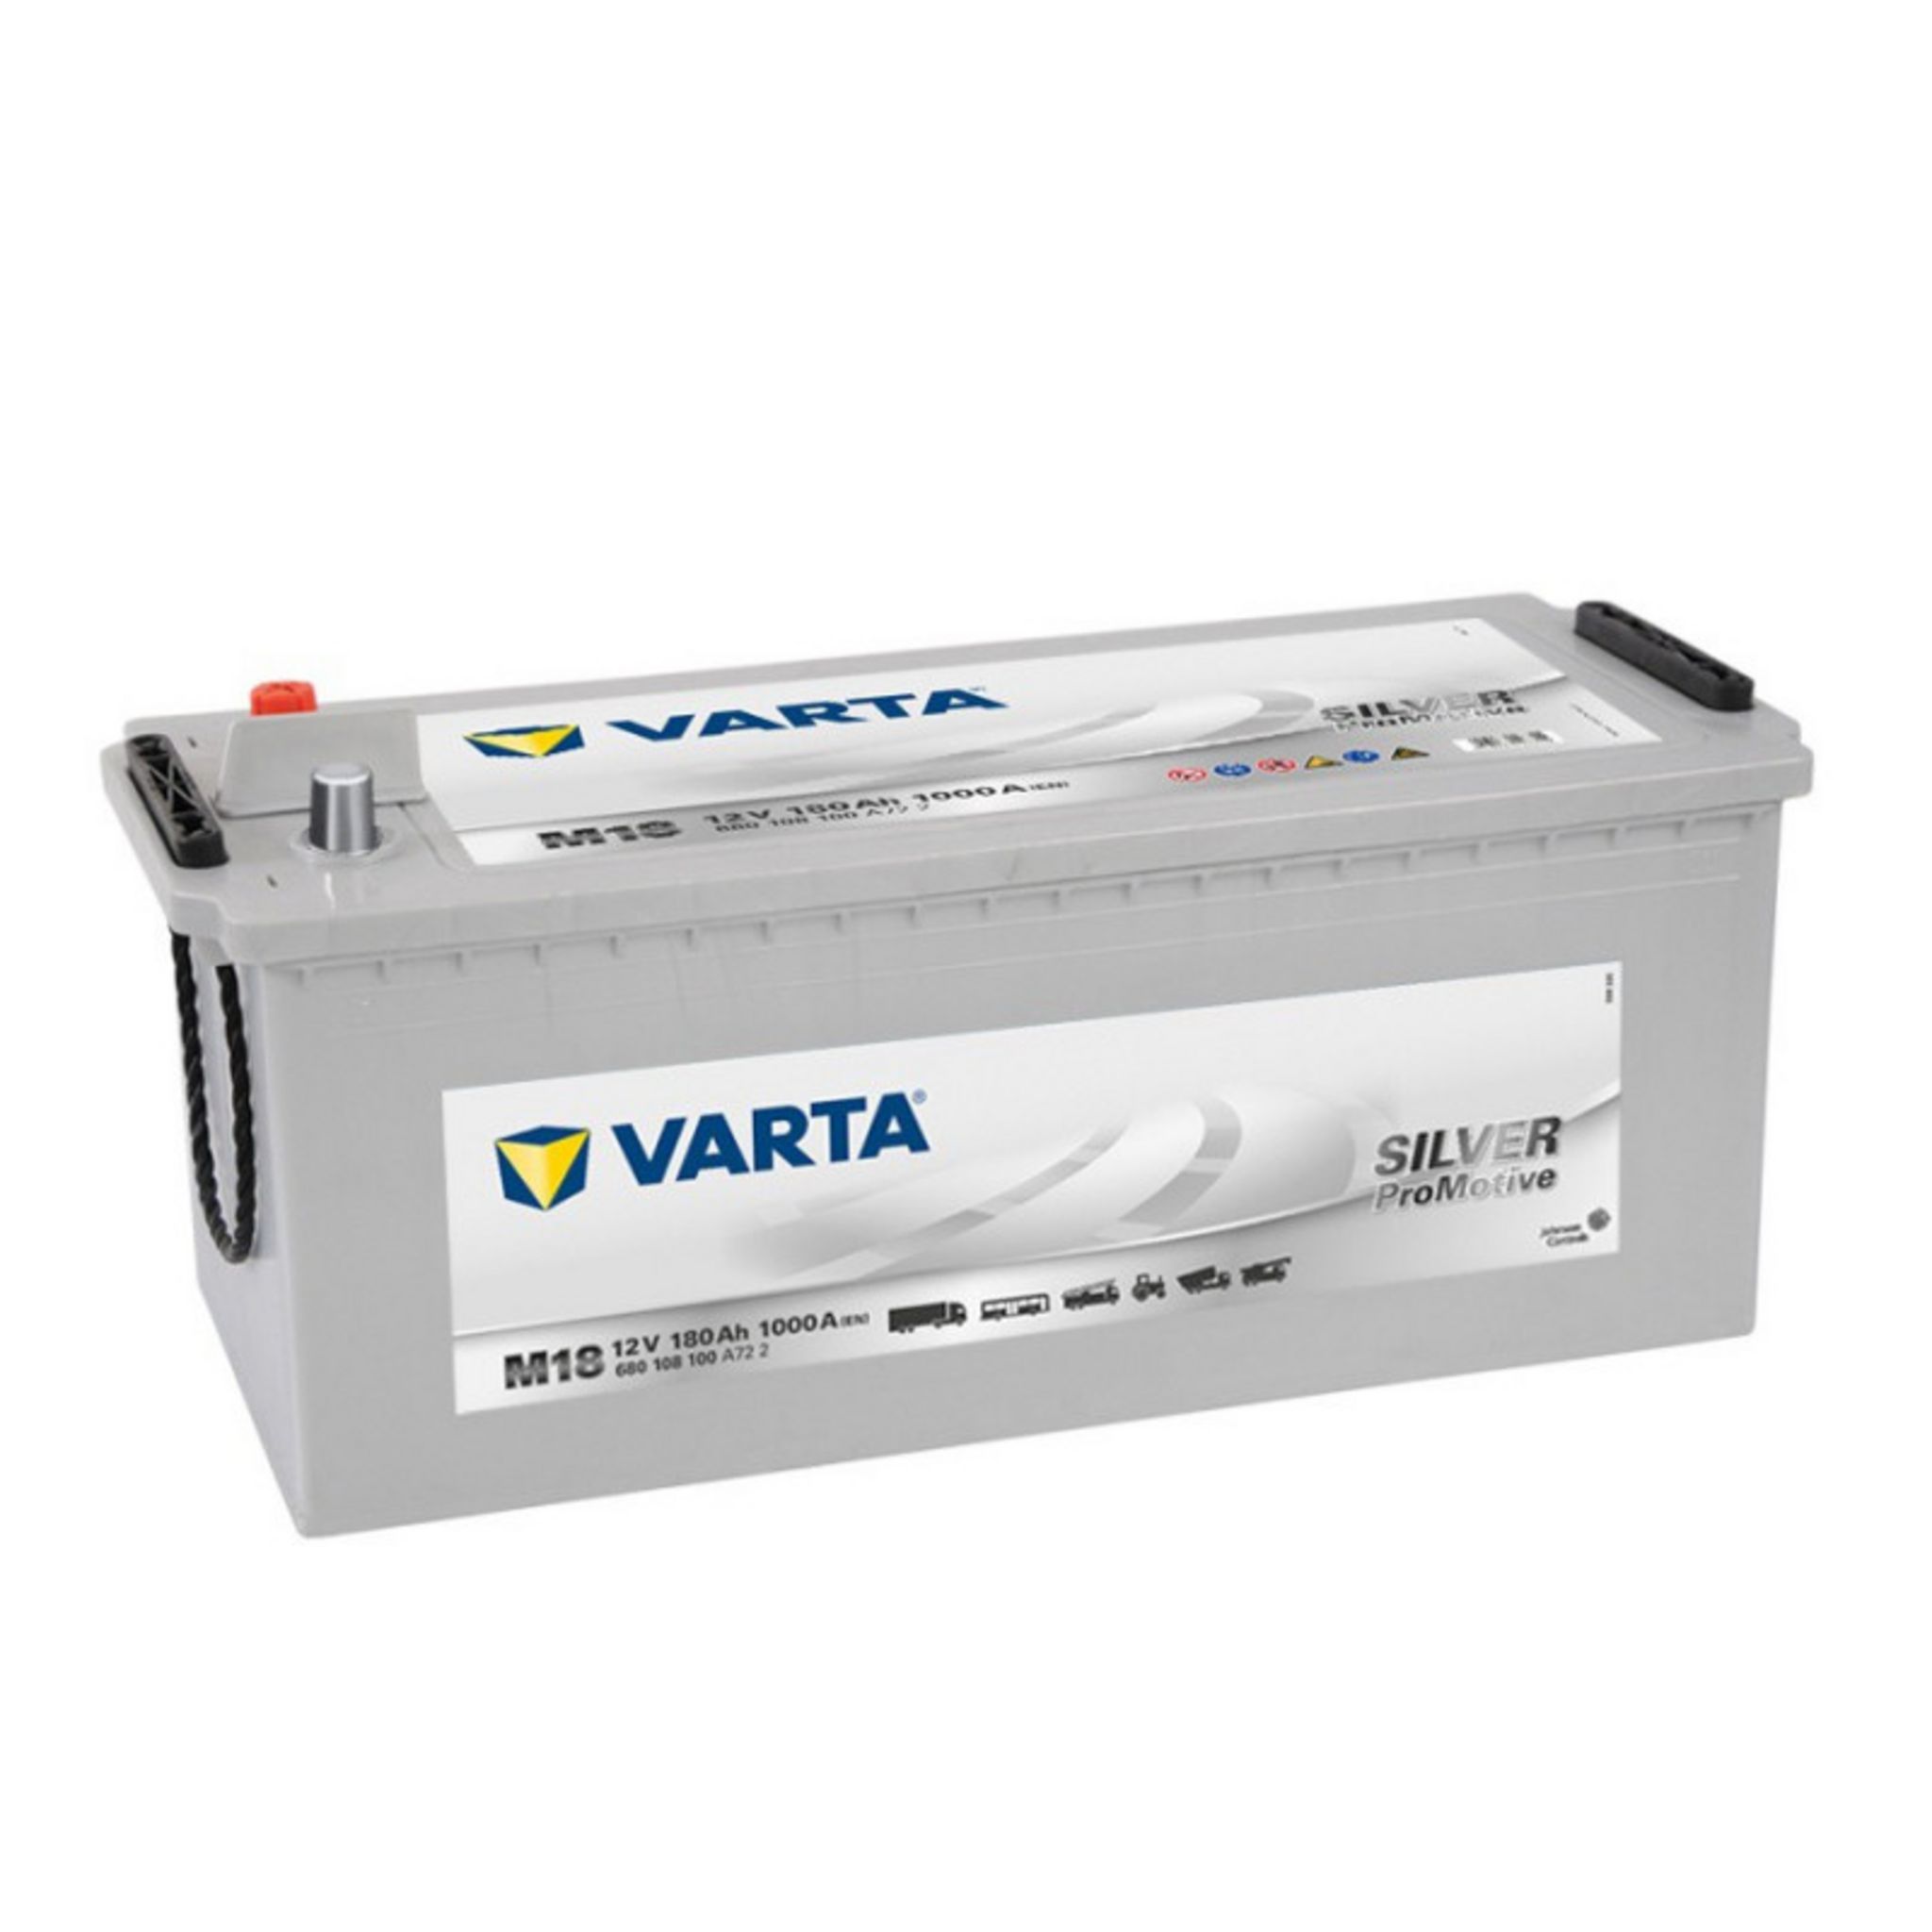 Varta Batterie Varta Promotive Silver M18 12V 180ah 1000A pas cher 